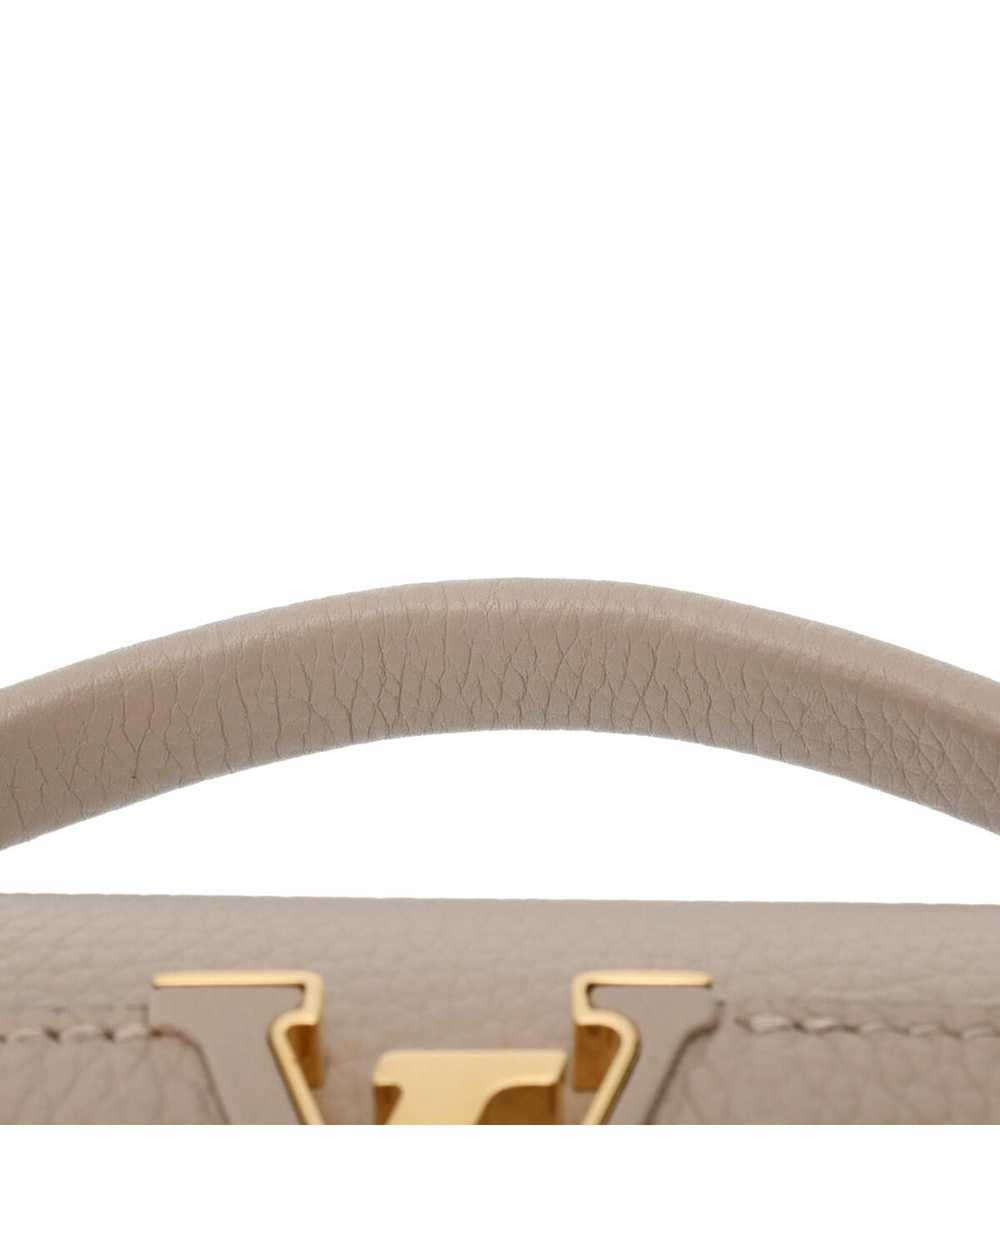 Louis Vuitton Sophisticated Leather Flap Handbag - image 4